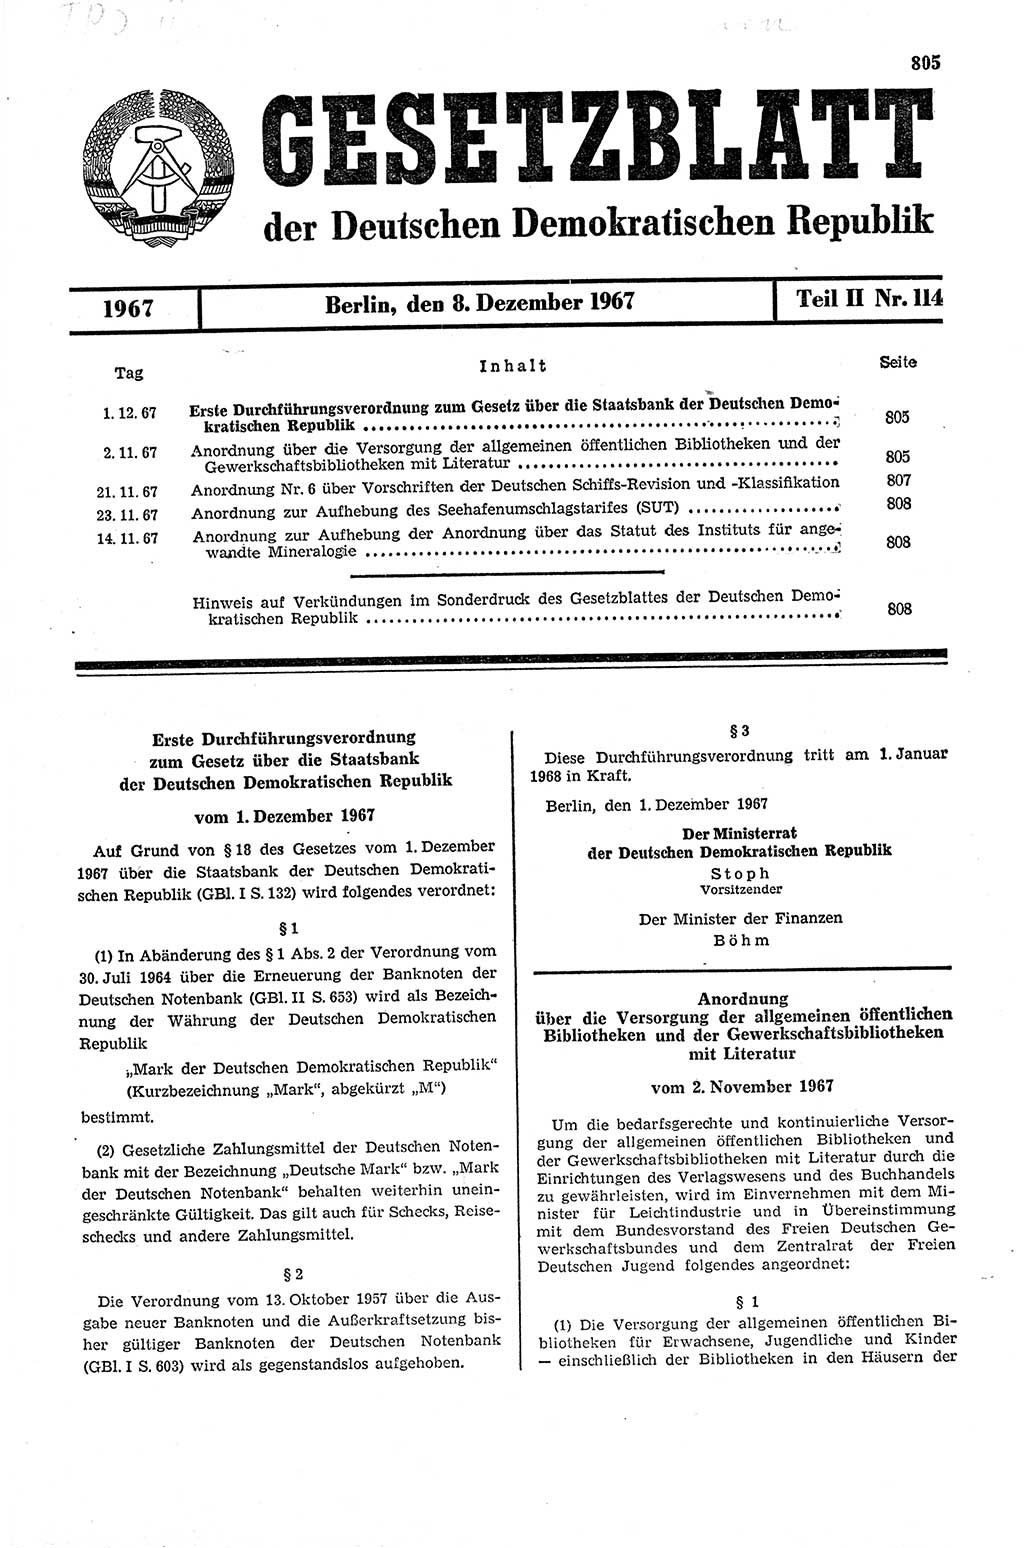 Gesetzblatt (GBl.) der Deutschen Demokratischen Republik (DDR) Teil ⅠⅠ 1967, Seite 805 (GBl. DDR ⅠⅠ 1967, S. 805)